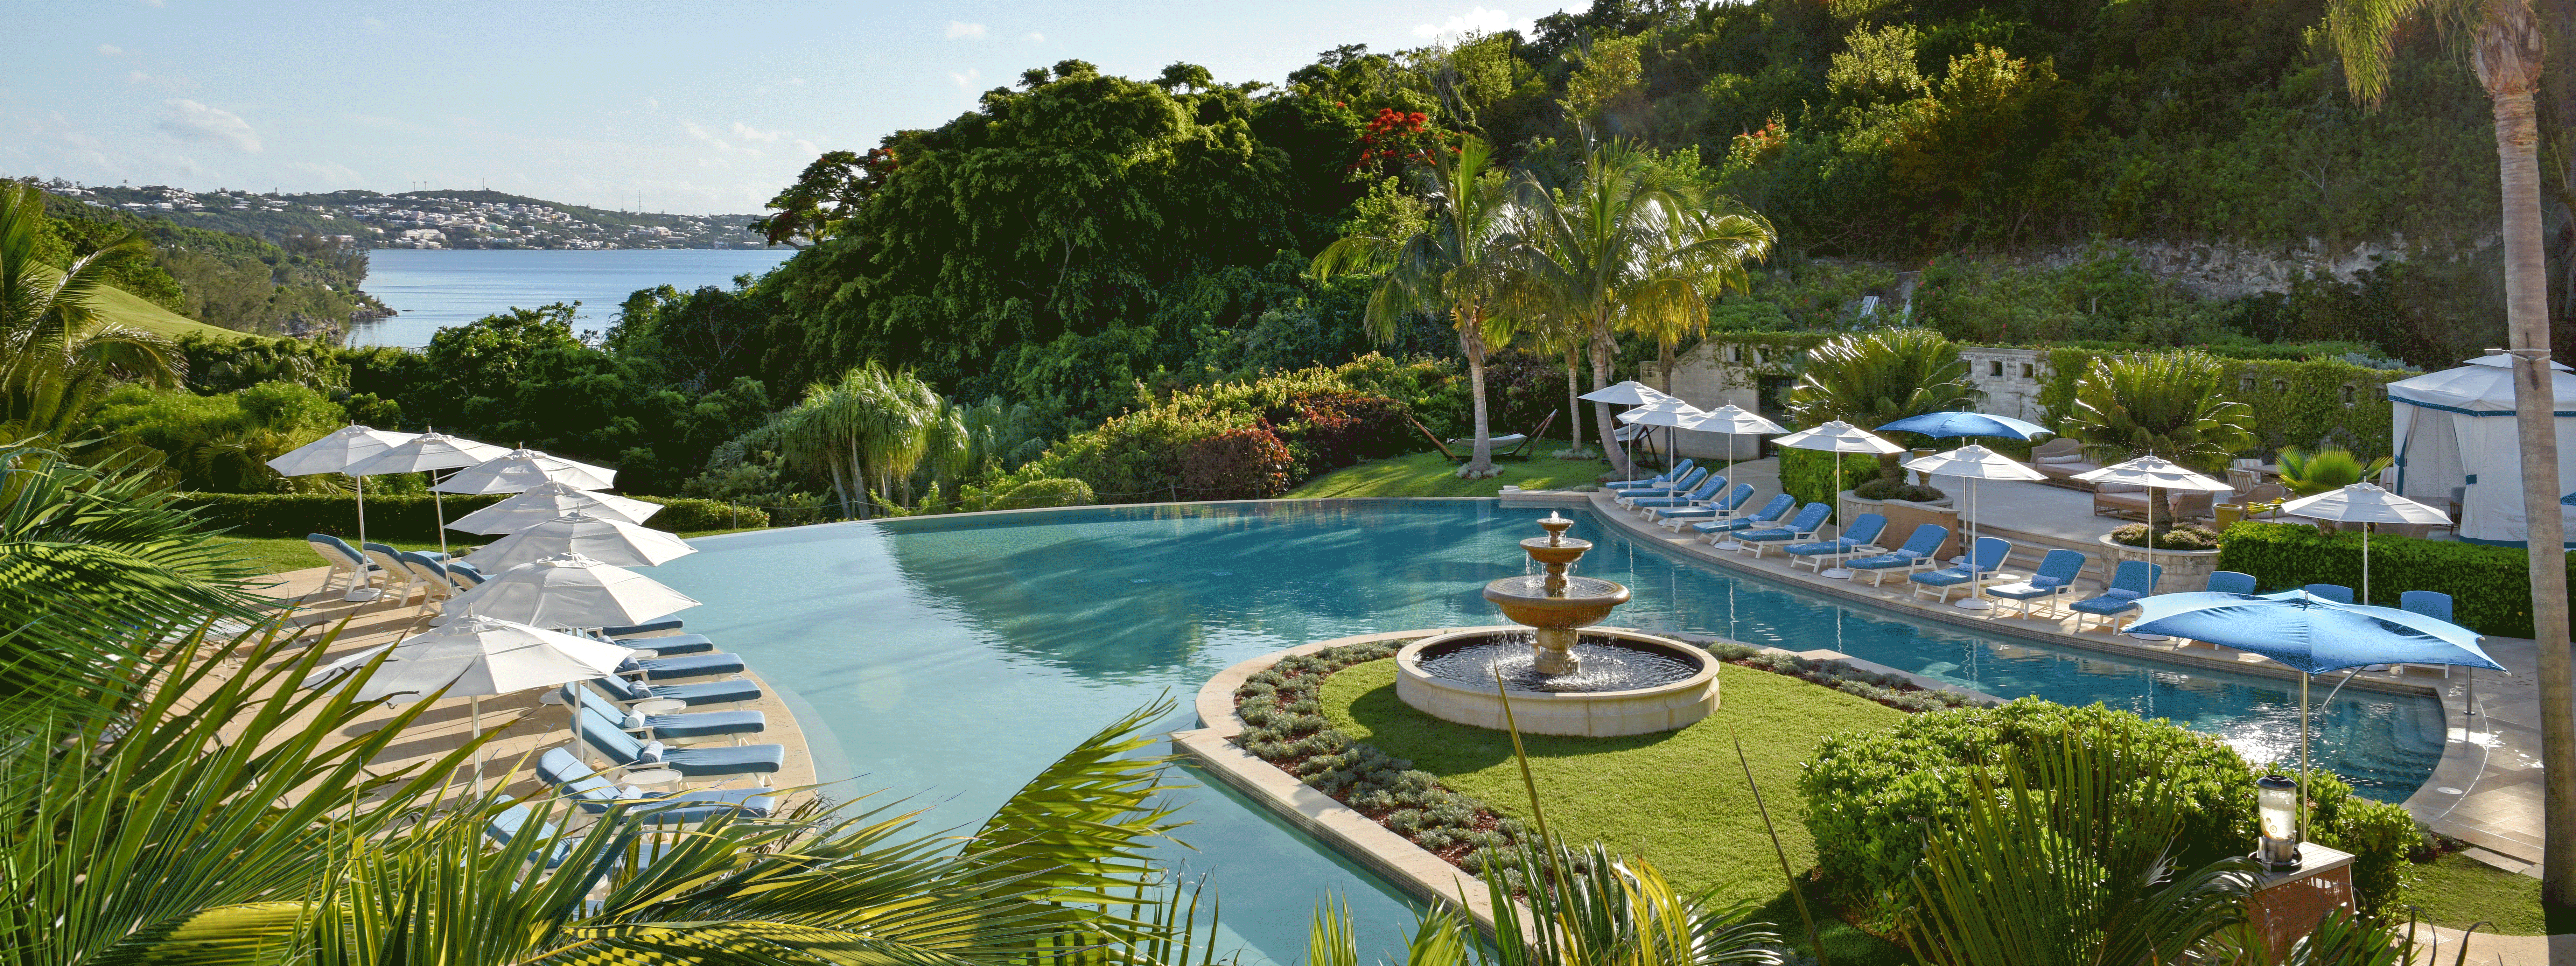 The main pool at the Rosewood Bermuda.